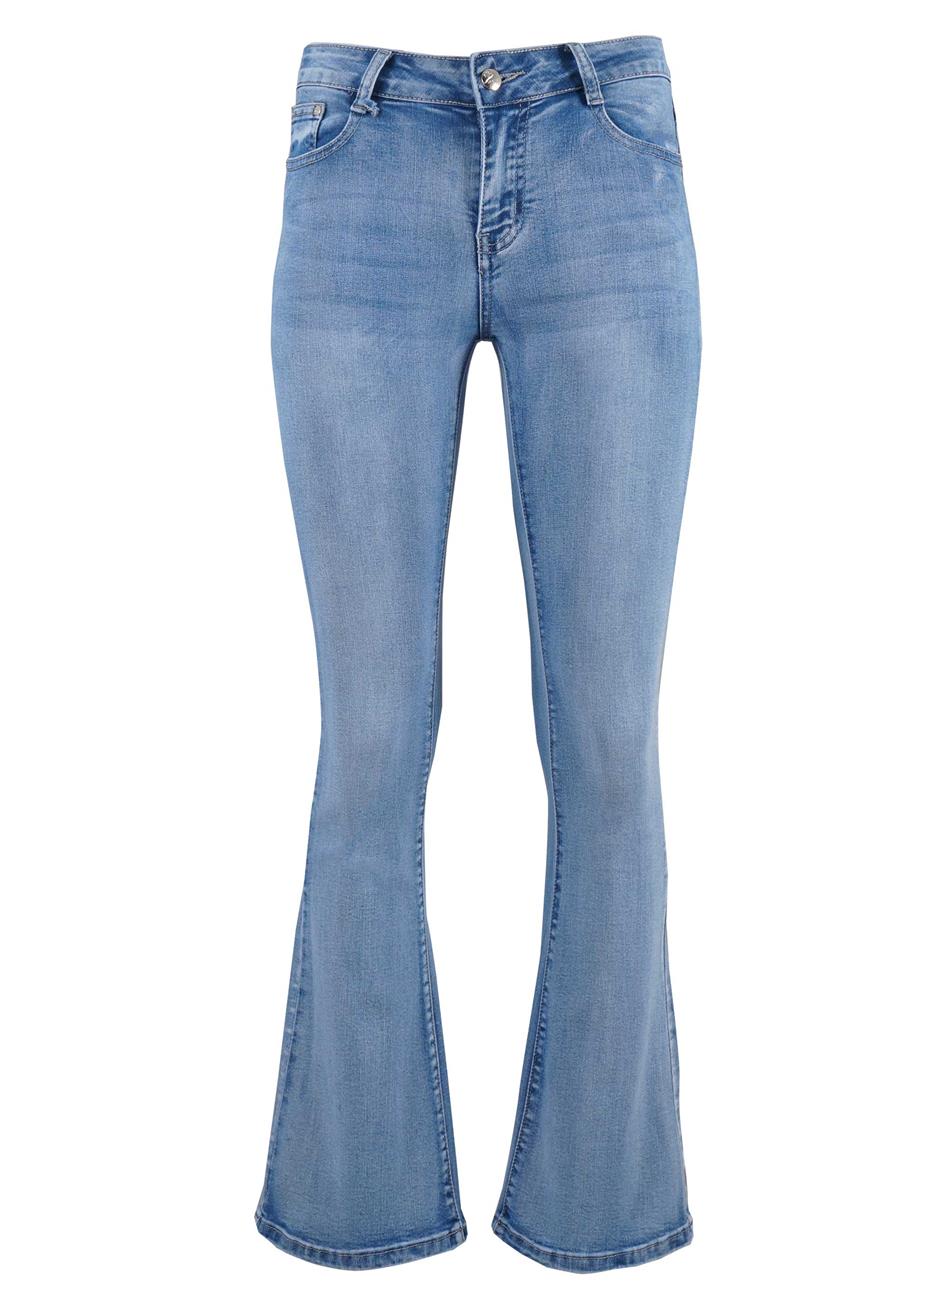 Γυναικεία jean παντελόνι bootcut.Denim collection